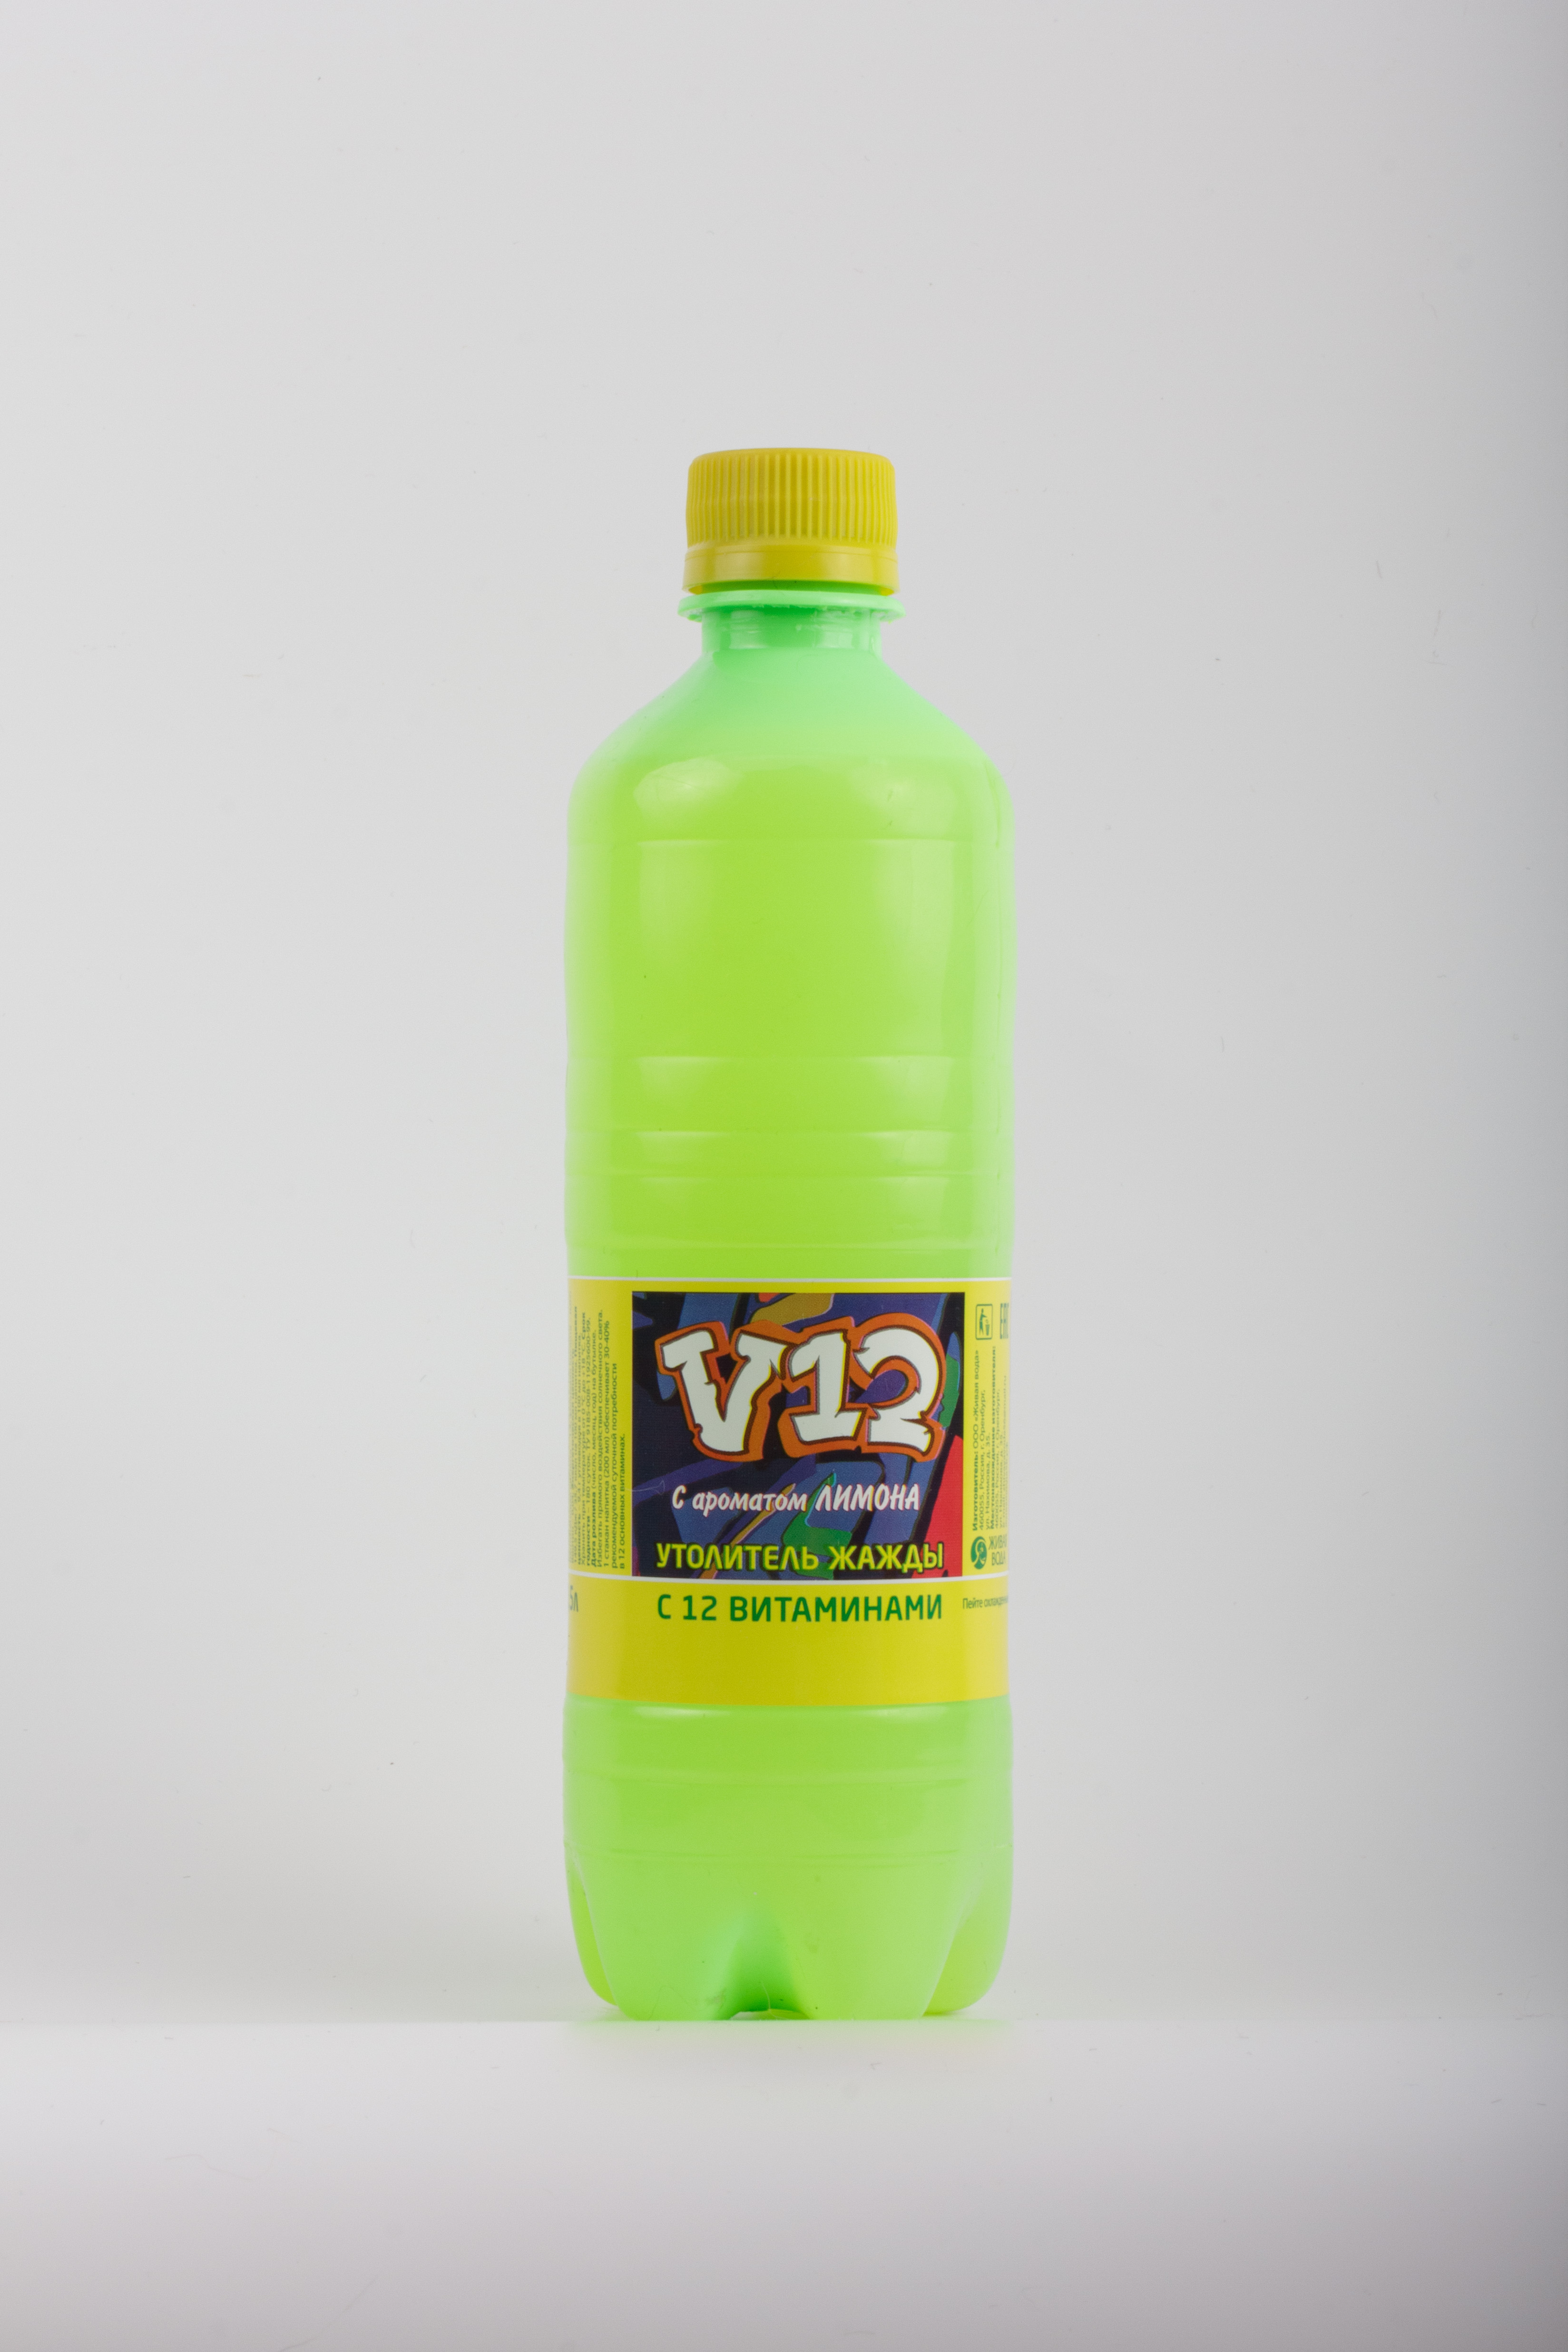 俄罗斯进口柠檬充气饮料12个维生素500ml 